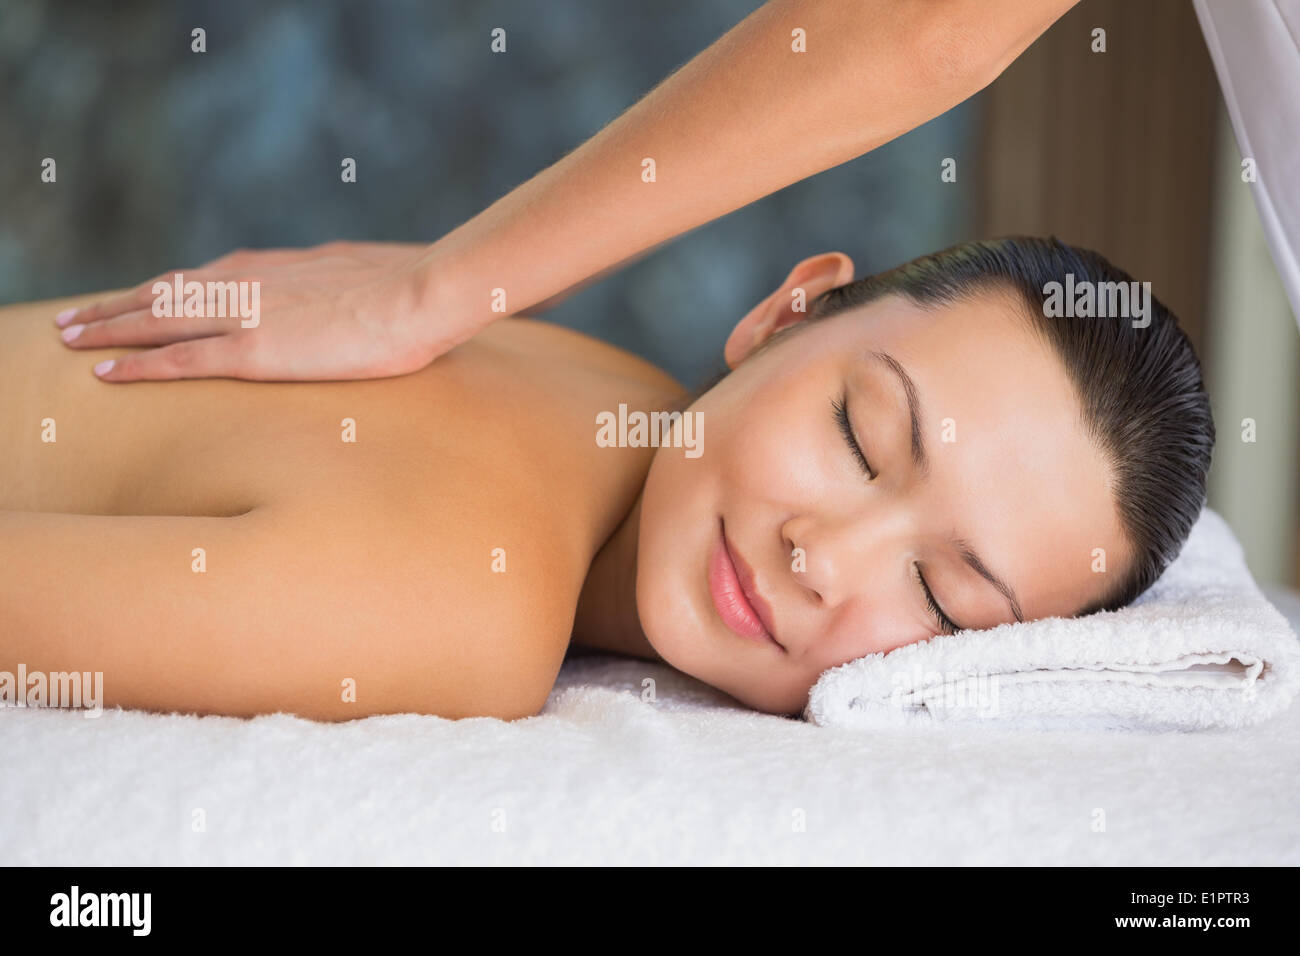 Smiling brunette enjoying a back massage Stock Photo